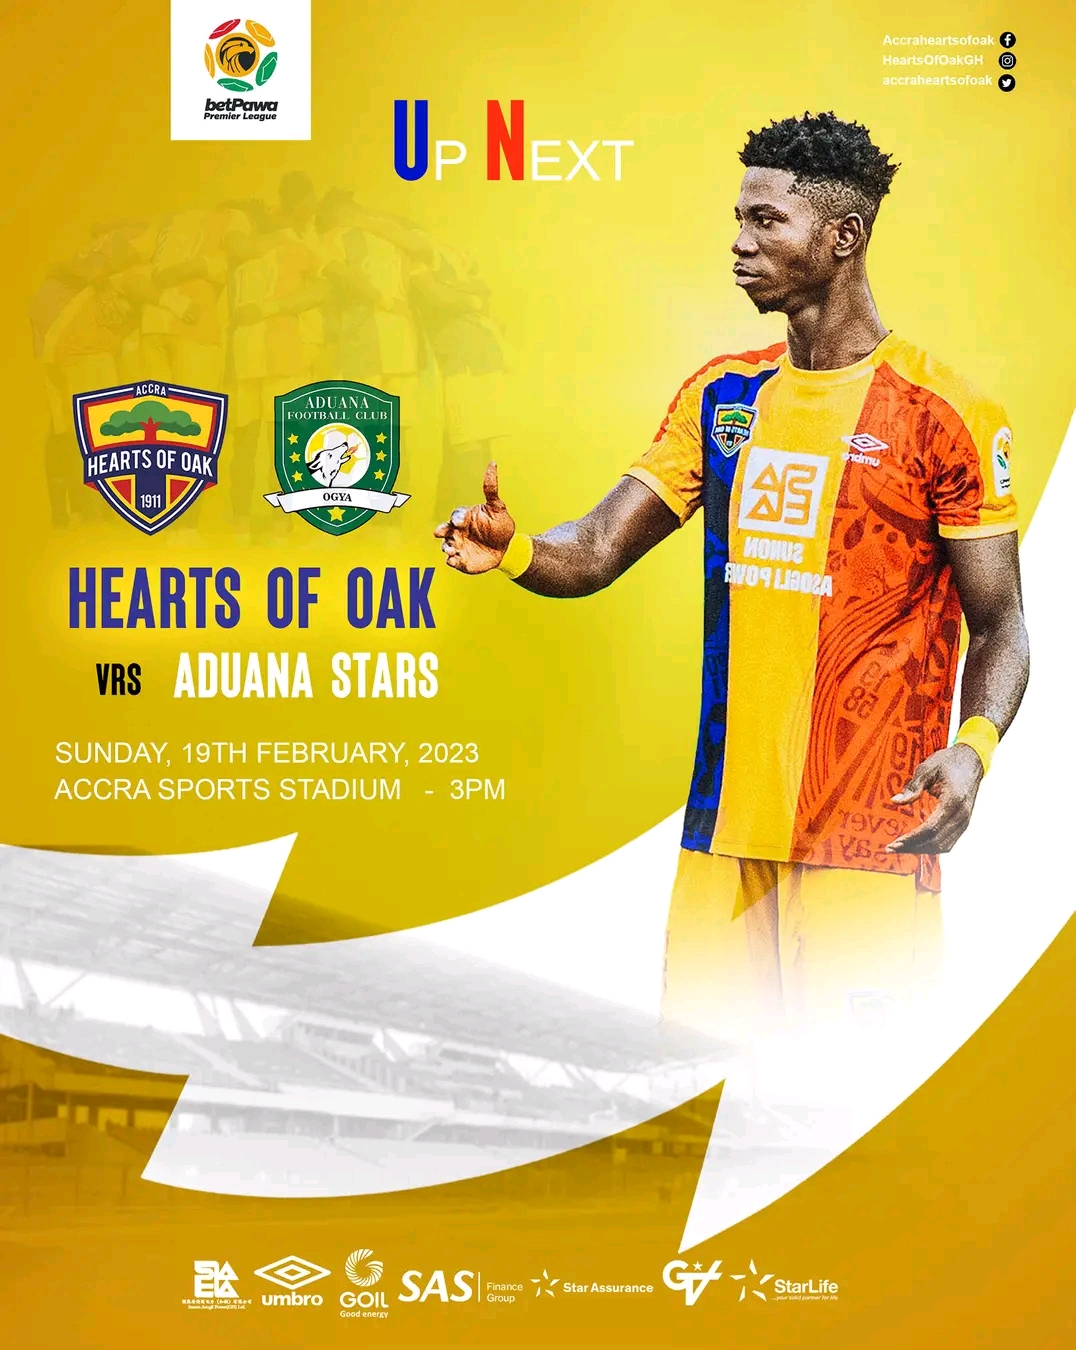 2022/23 Ghana Premier League: Week 18 Match Preview – Hearts of Oak vs Aduana Stars